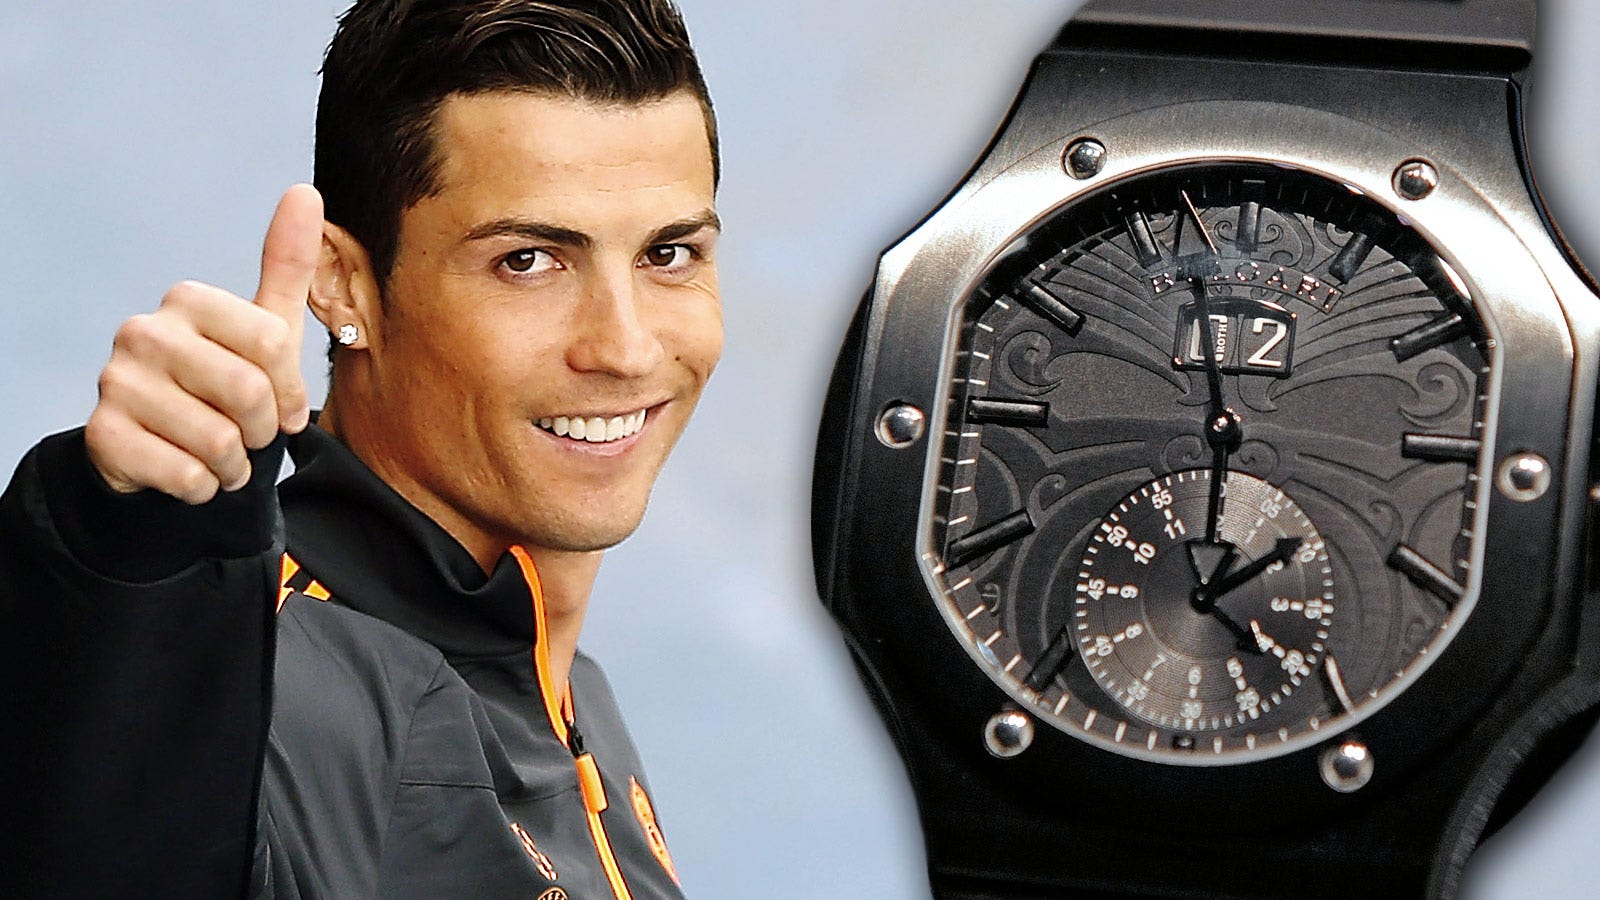 Видео новинок часов. Часы Ronaldo of59. Часы Cristiano Ronaldo. Криштиану Роналду Jacob&co. Часы часы Криштиану Роналду.